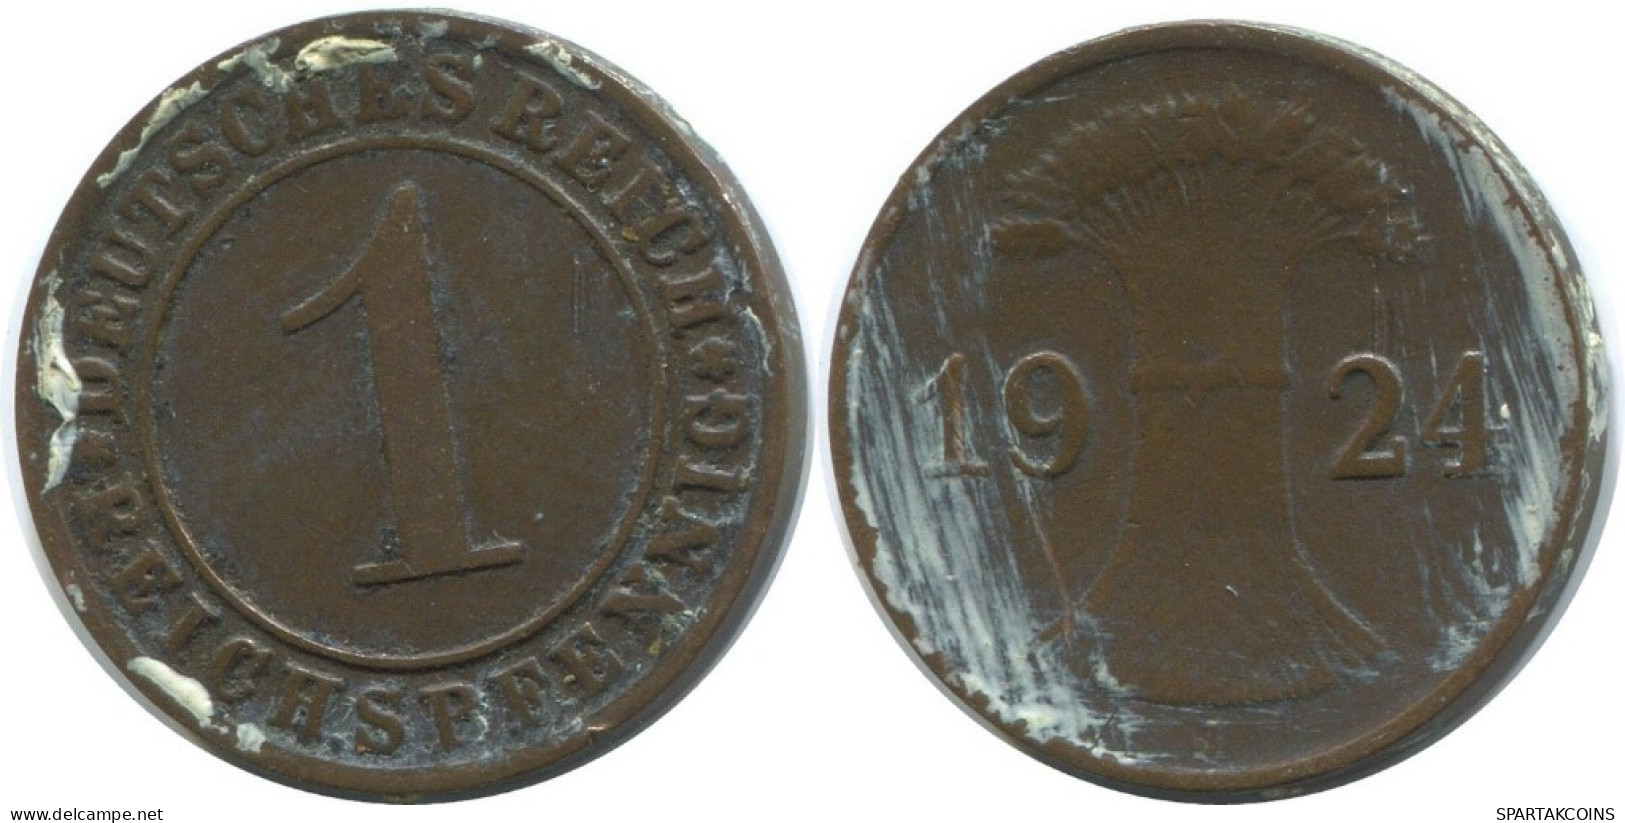 1 REICHSPFENNIG 1924 J ALEMANIA Moneda GERMANY #AD435.9.E.A - 1 Rentenpfennig & 1 Reichspfennig